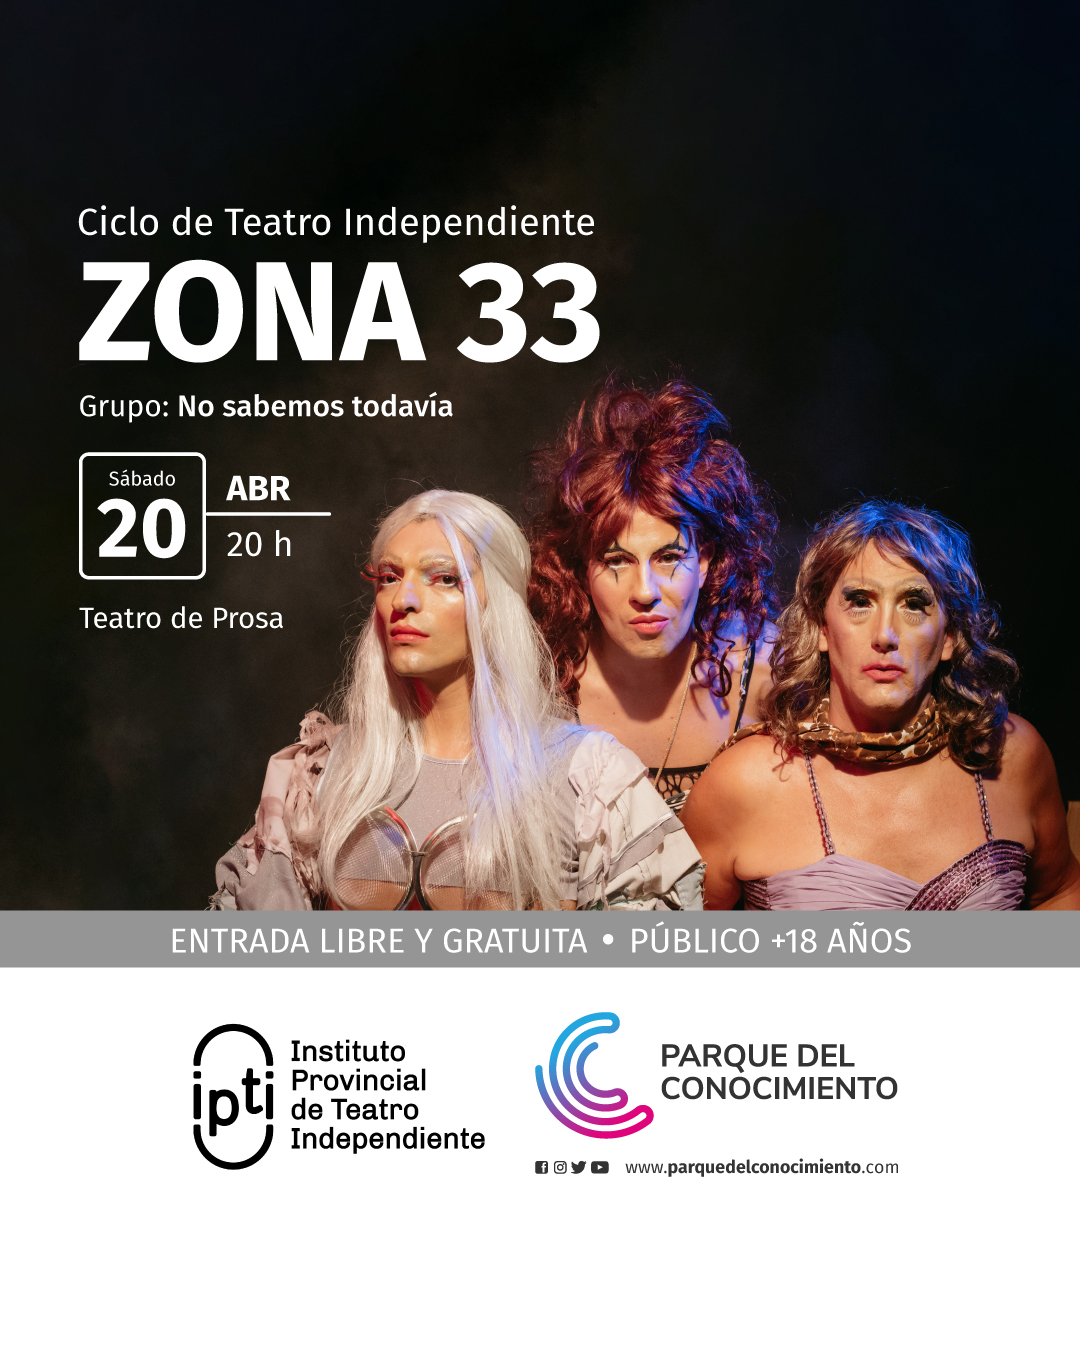 La obra “Zona 33” del grupo “No Sabemos Todavía” dará inicio a al Ciclo de Teatro Independiente en el Parque del Conocimiento imagen-2